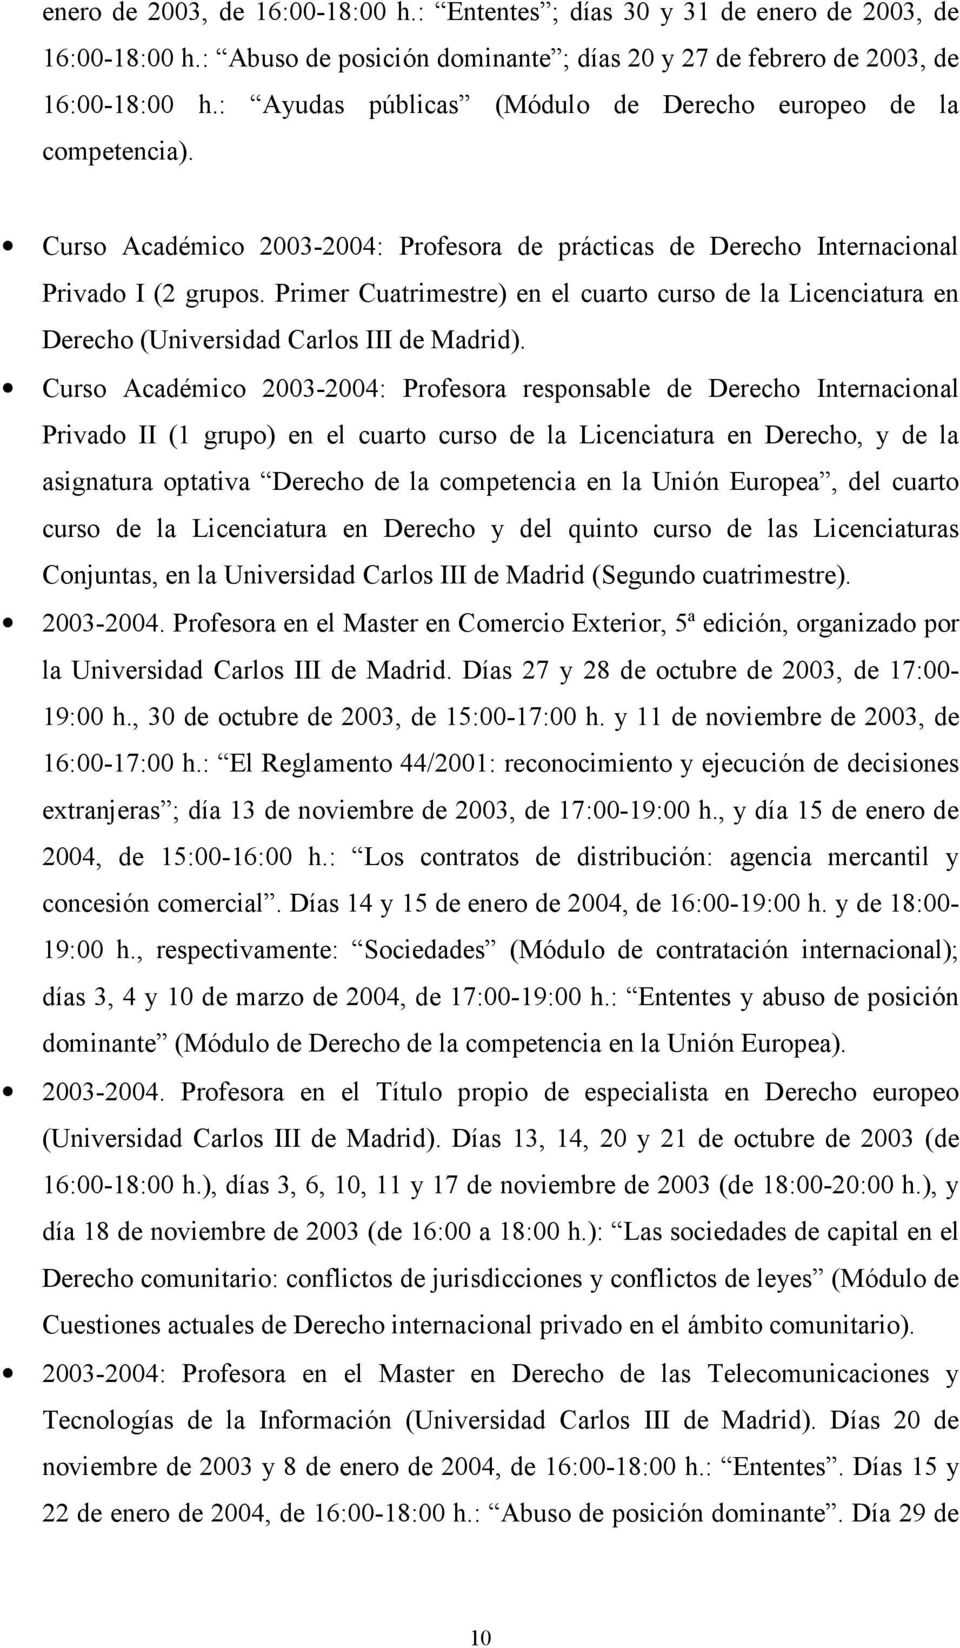 Primer Cuatrimestre) en el cuarto curso de la Licenciatura en Derecho (Universidad Carlos III de Madrid).